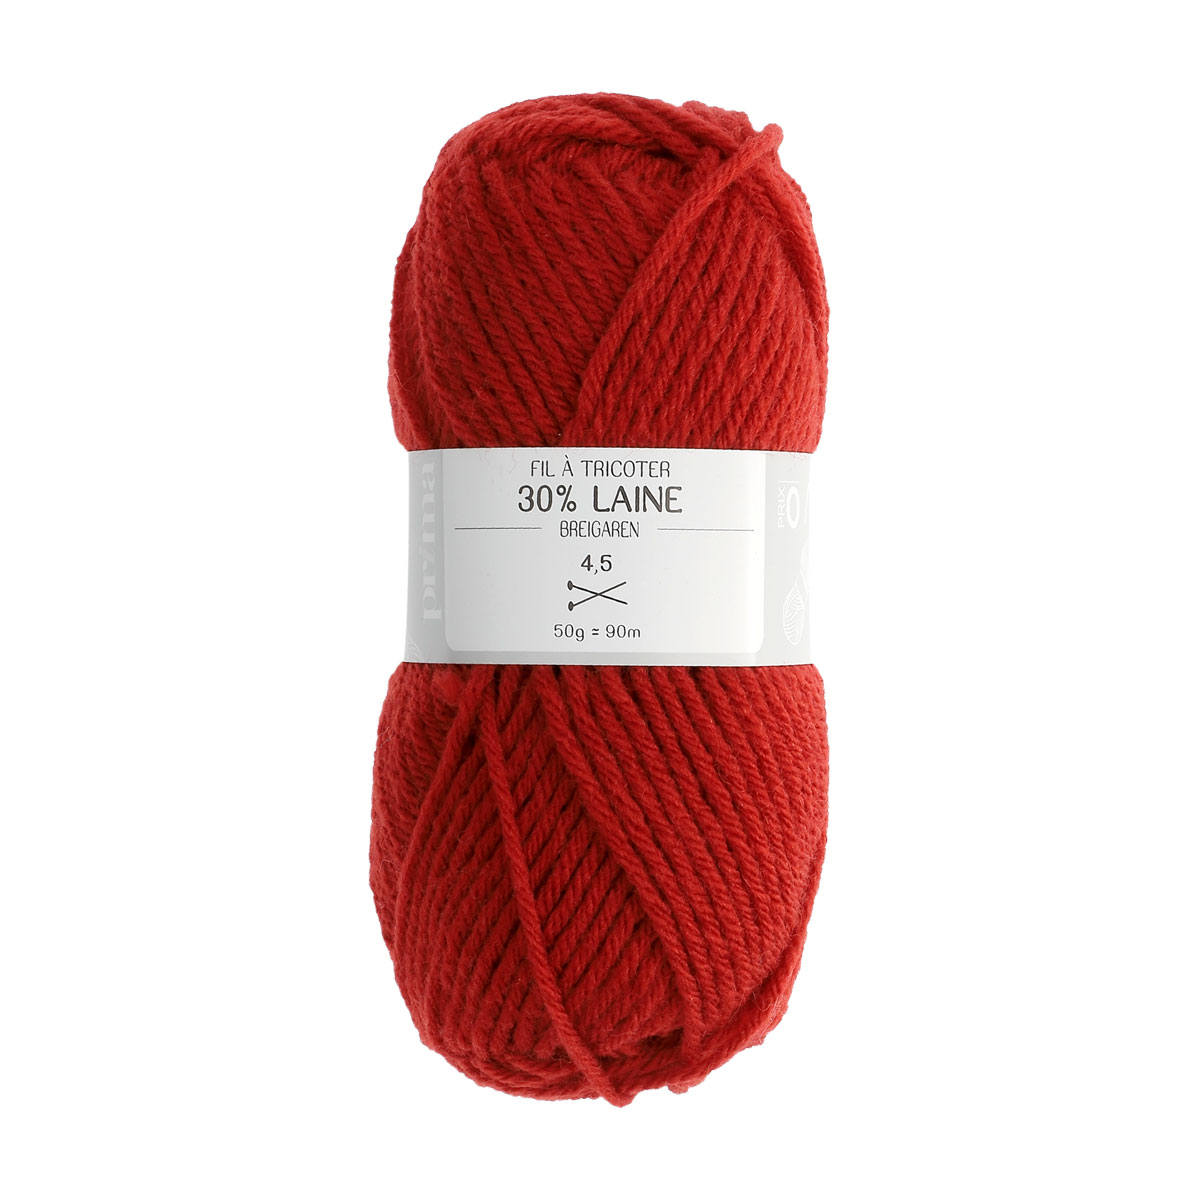 Pelotes de laine,500g bricolage tricot grosse laine fil itinérant